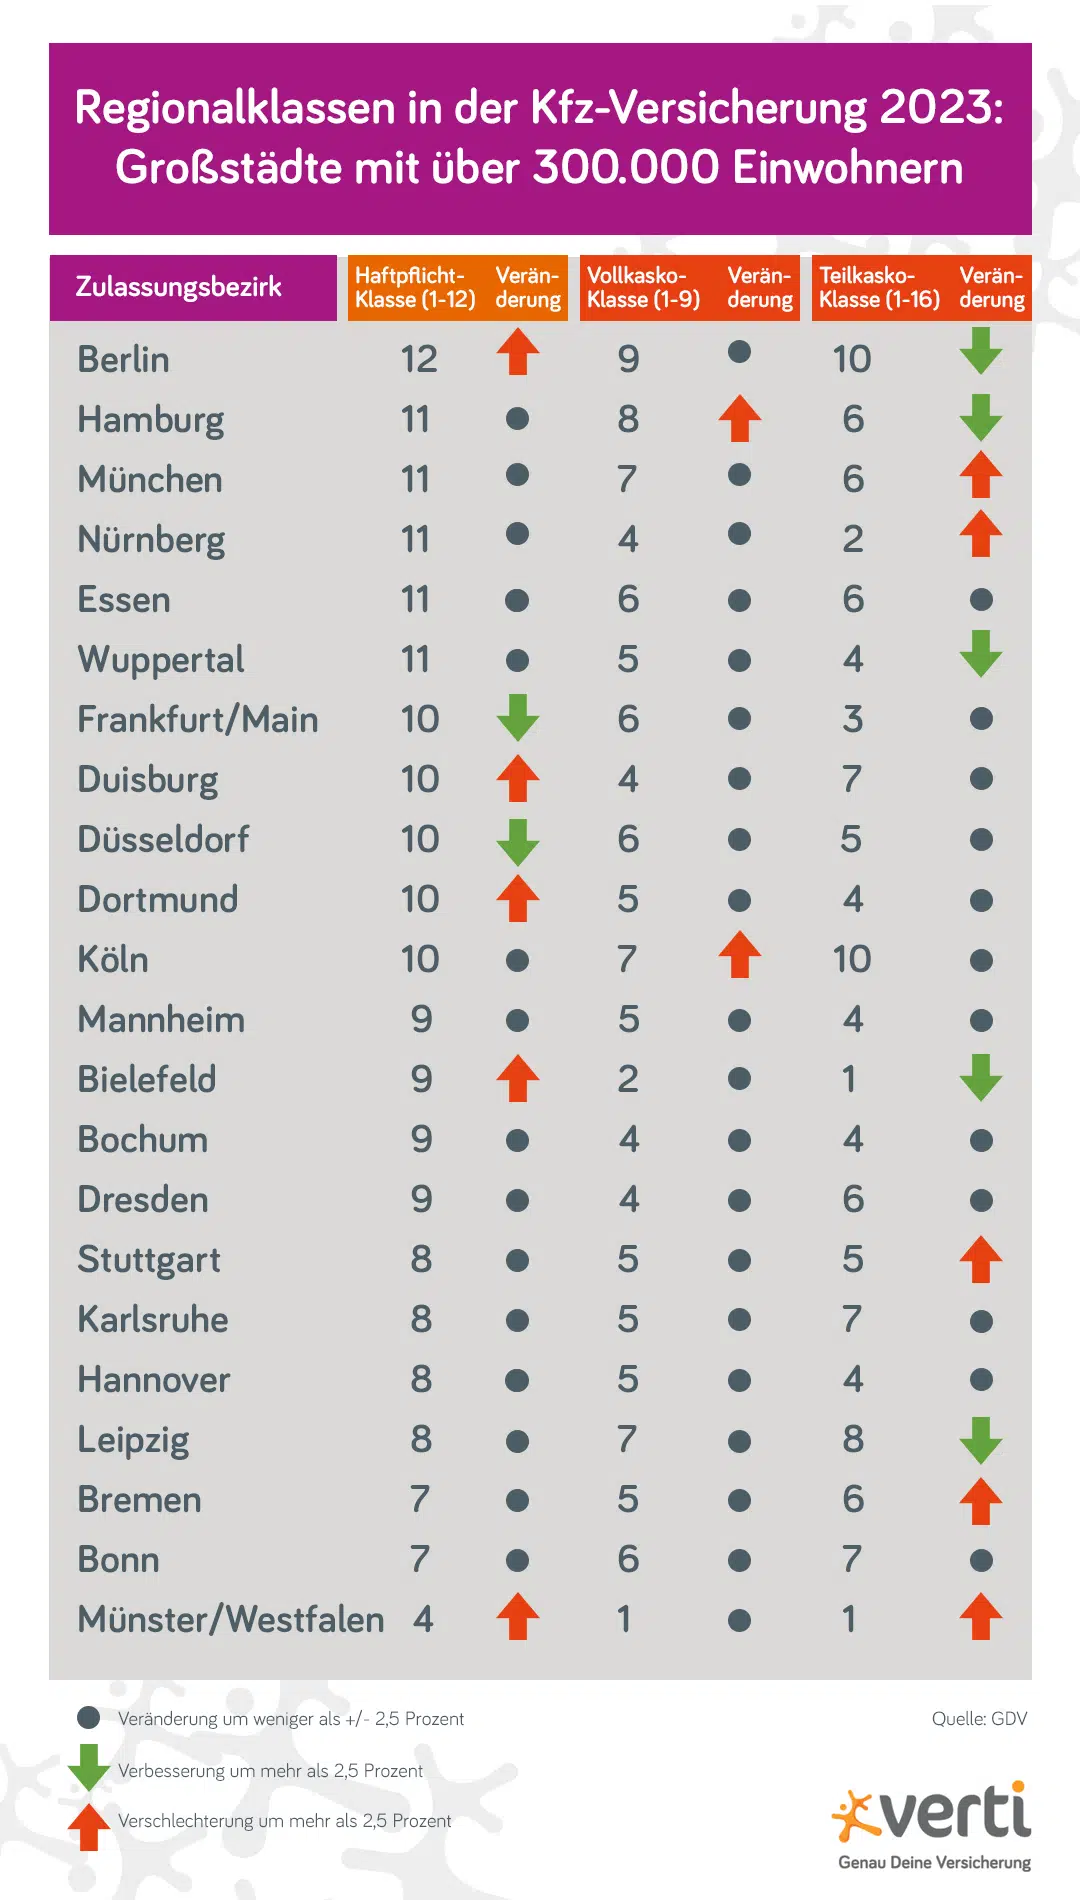 Für deutsche Großstädte gelten 2022 laut GDV die in der Tabelle aufgeführten Regionalklassen.